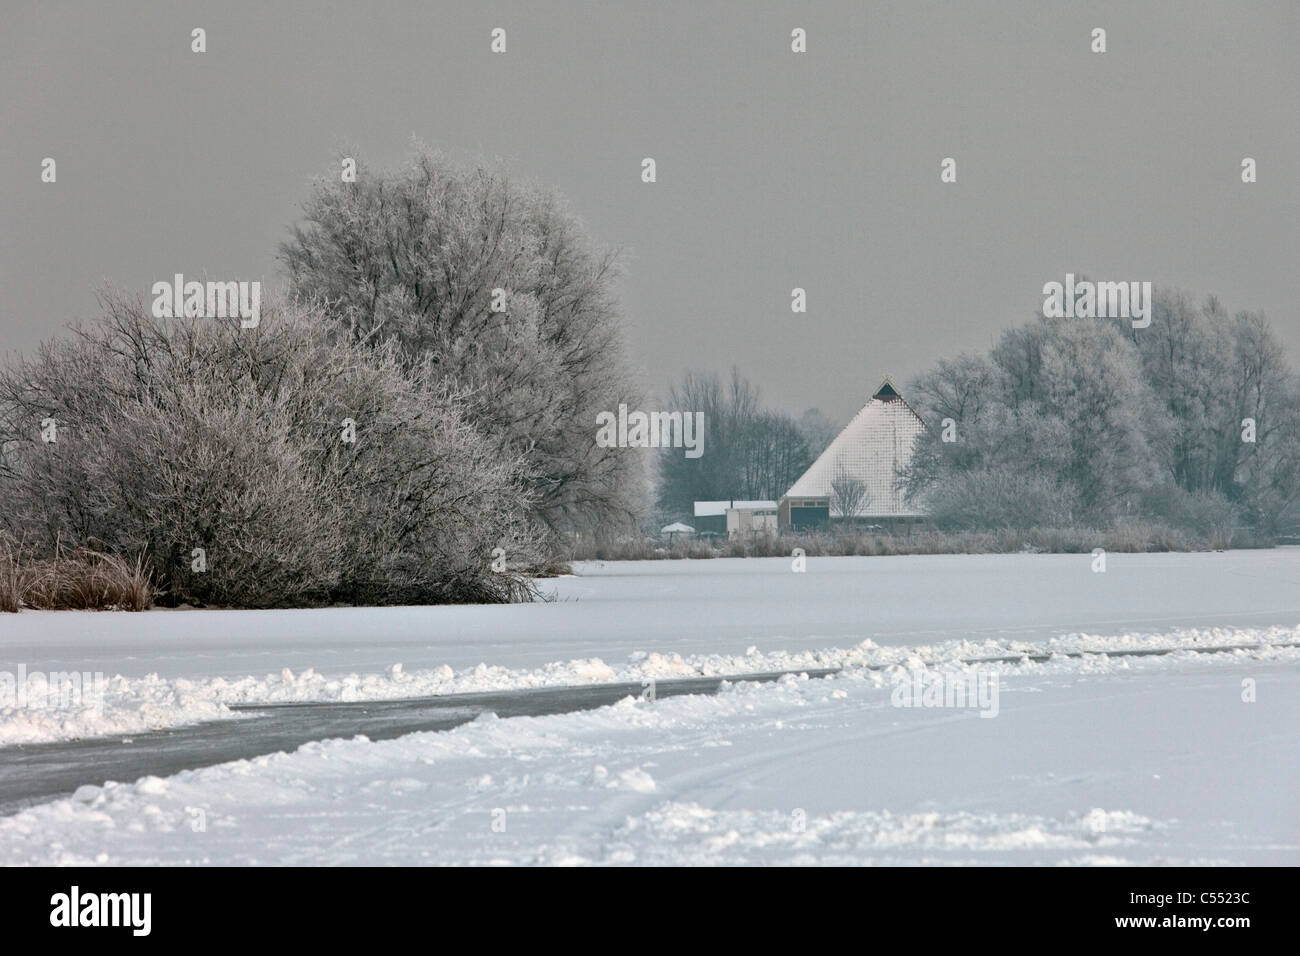 Les Pays-Bas, Gaastmeer, ferme près de lac gelé dans un paysage de neige et de gel. Banque D'Images